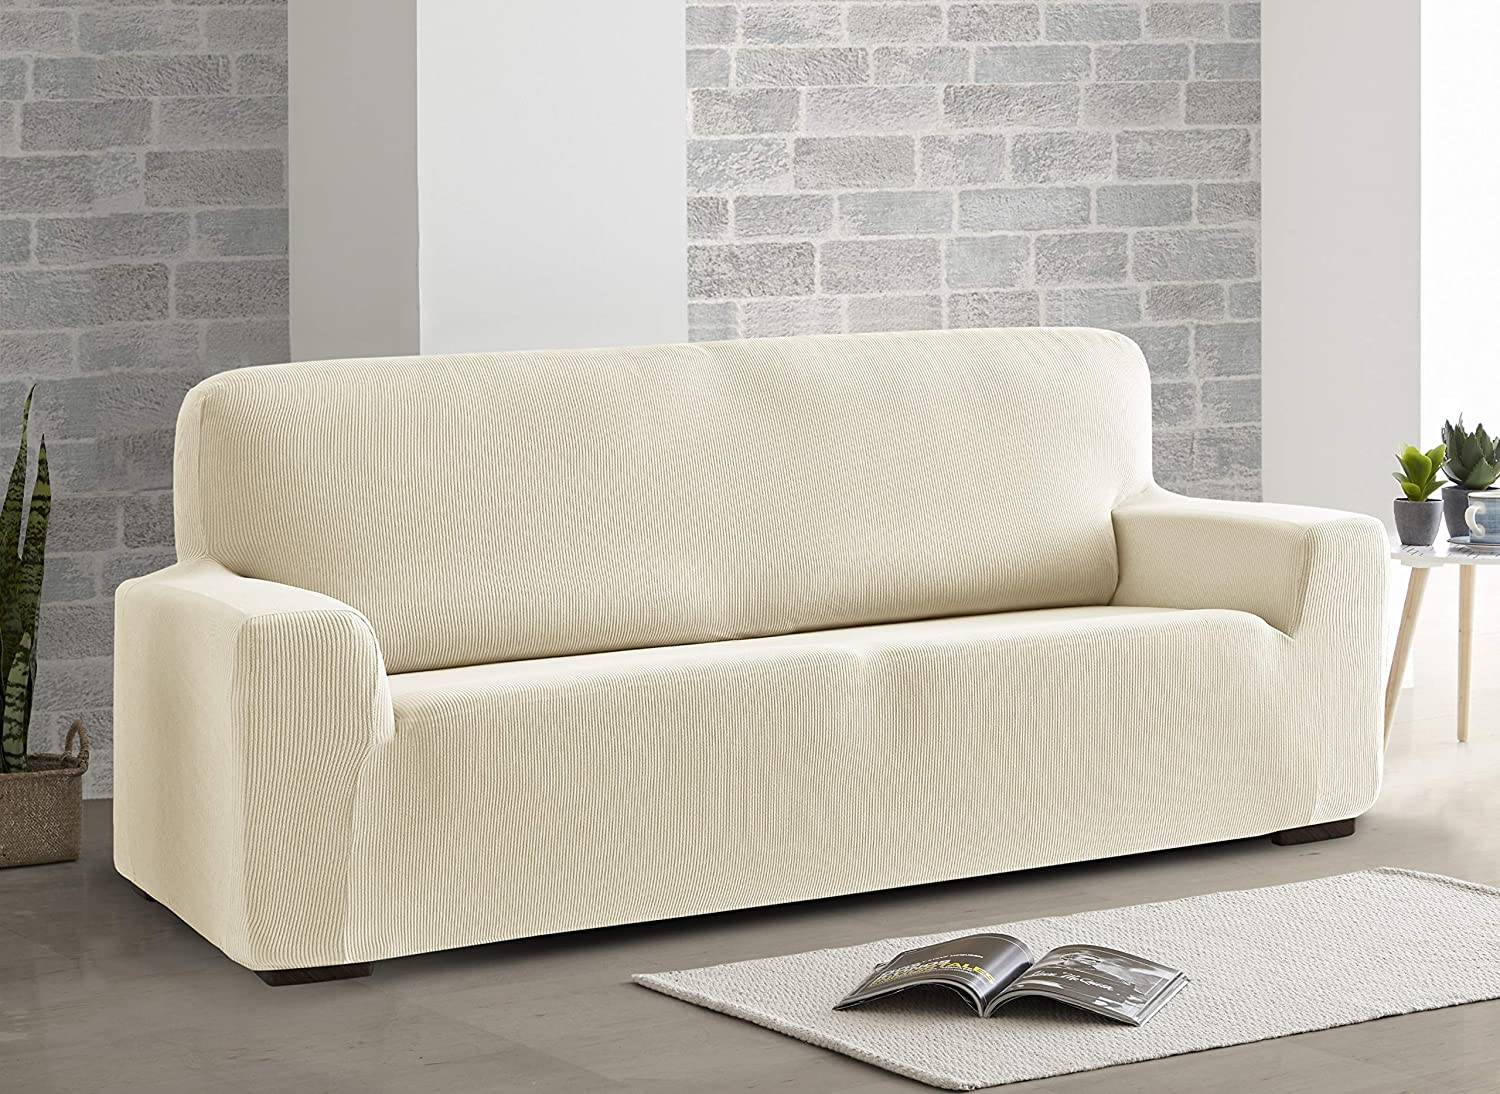 Funda sofa elastica de ManoMano de color beige